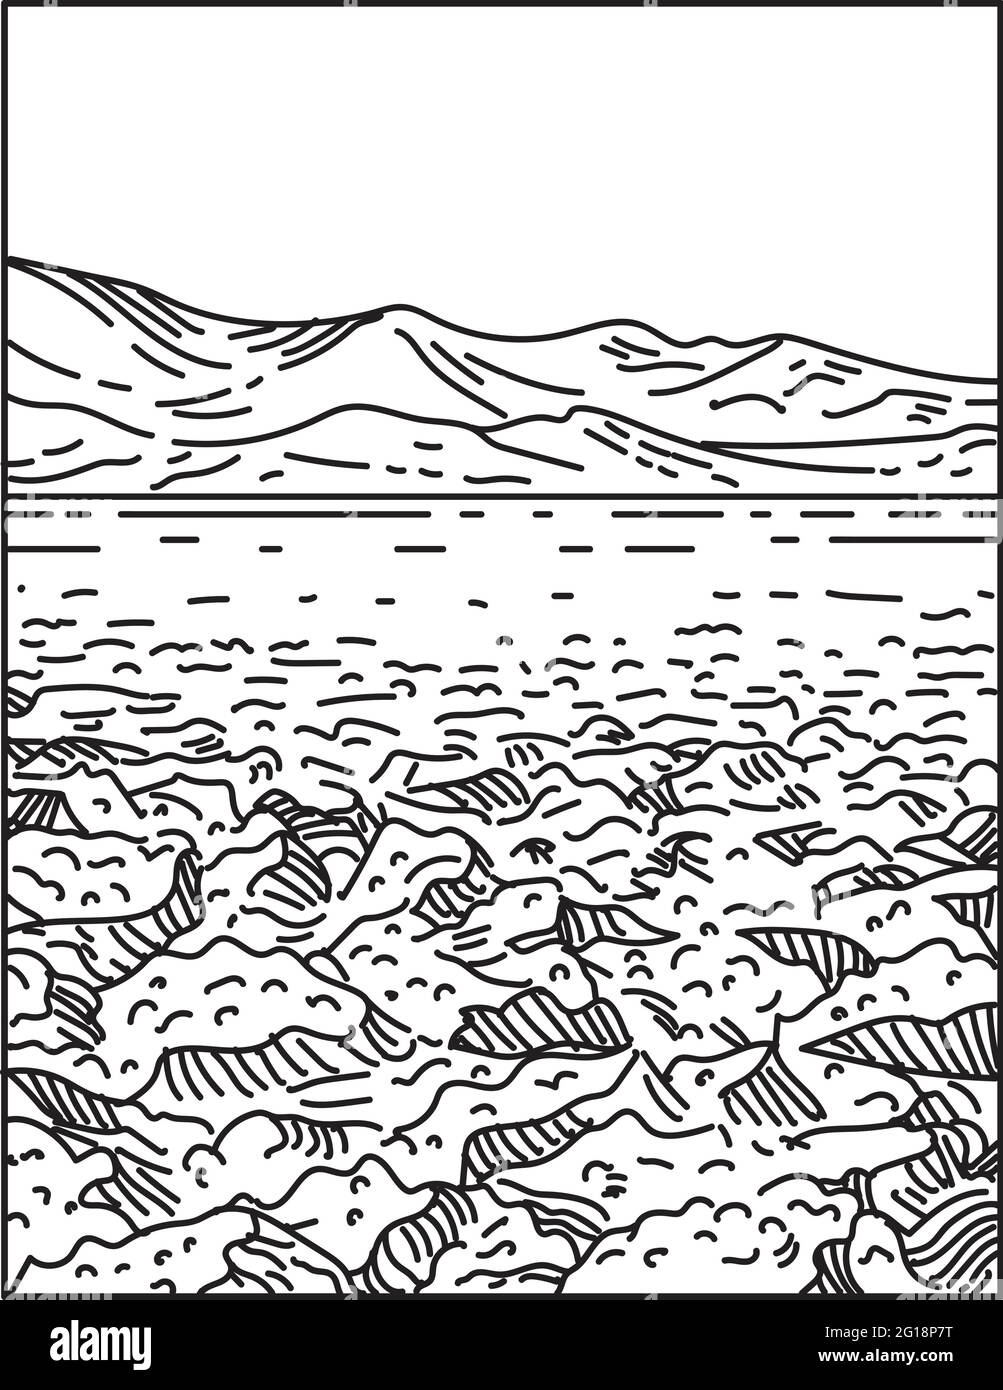 Illustration mono-ligne du parcours de golf Devil's situé dans le désert de Mojave dans le parc national de la Vallée de la mort, Californie États-Unis d'Amérique fait Illustration de Vecteur